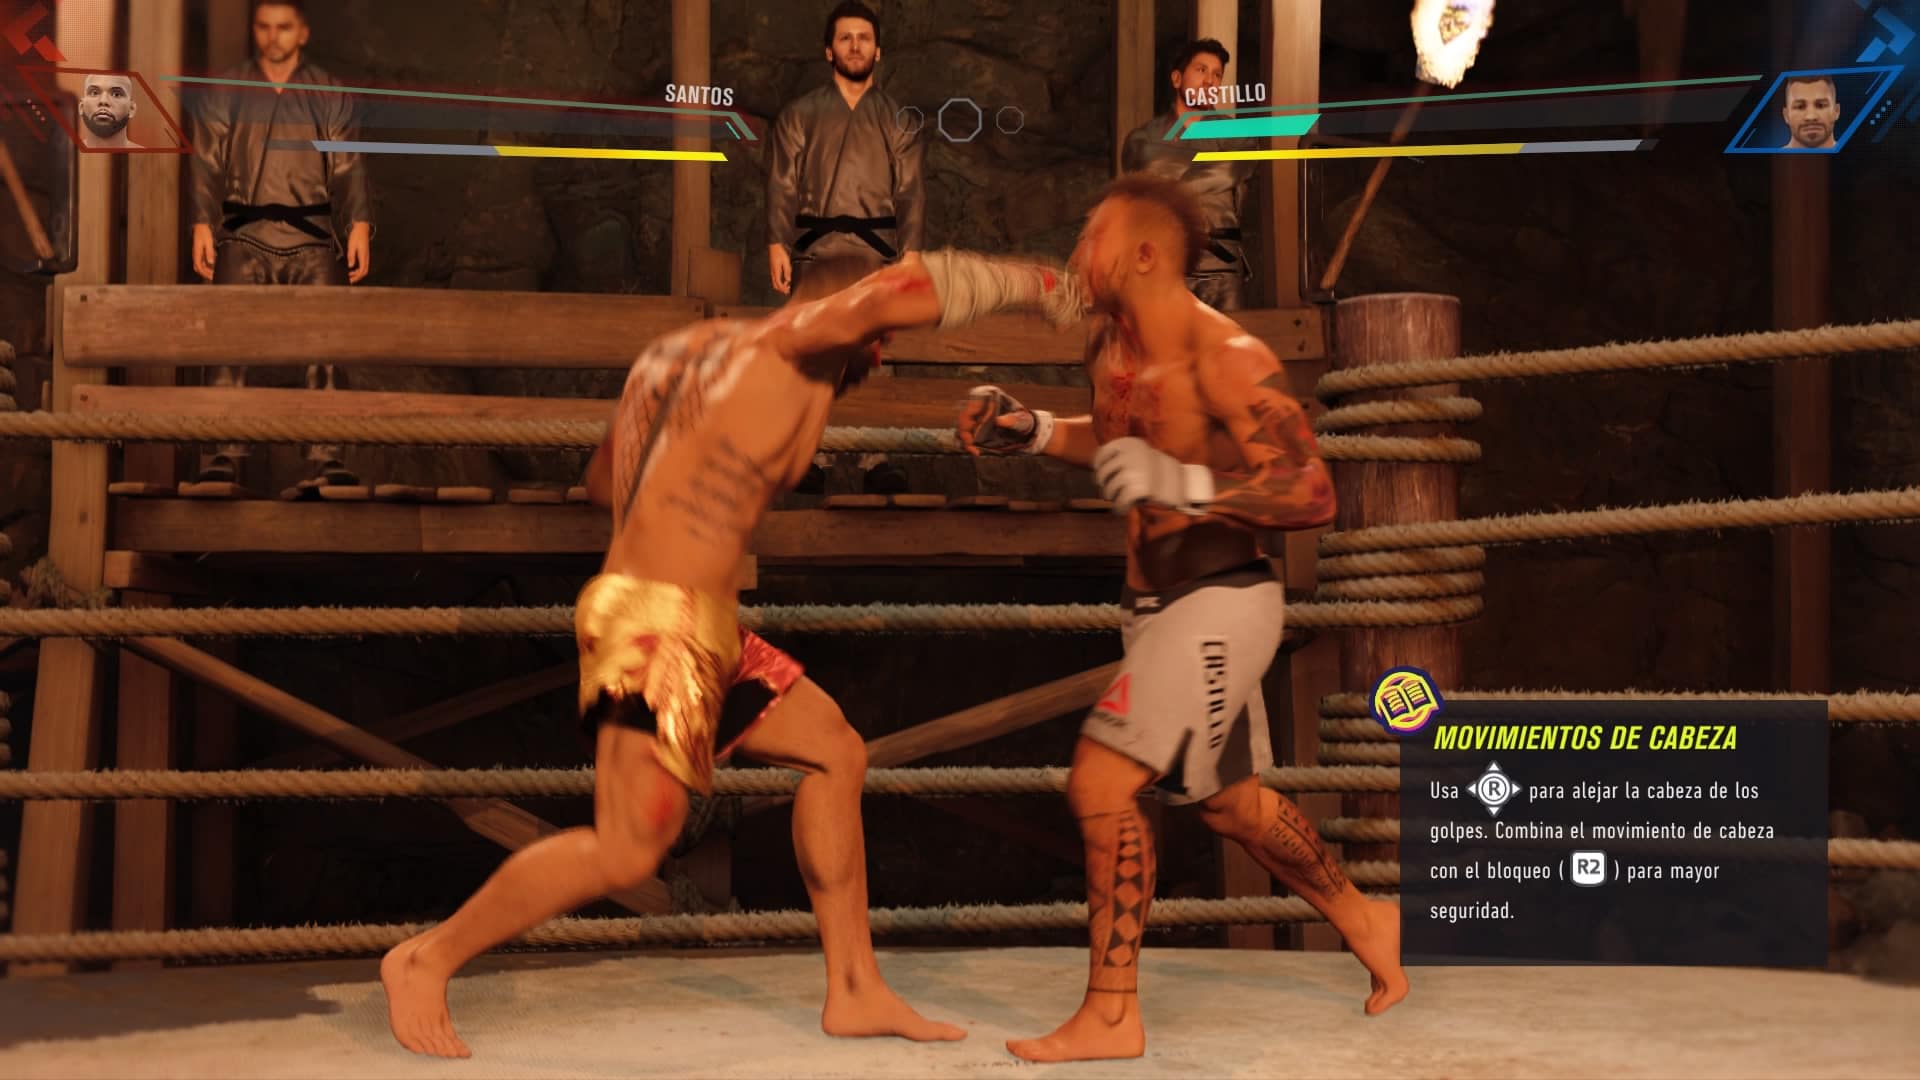 EA Sports UFC 4 Review